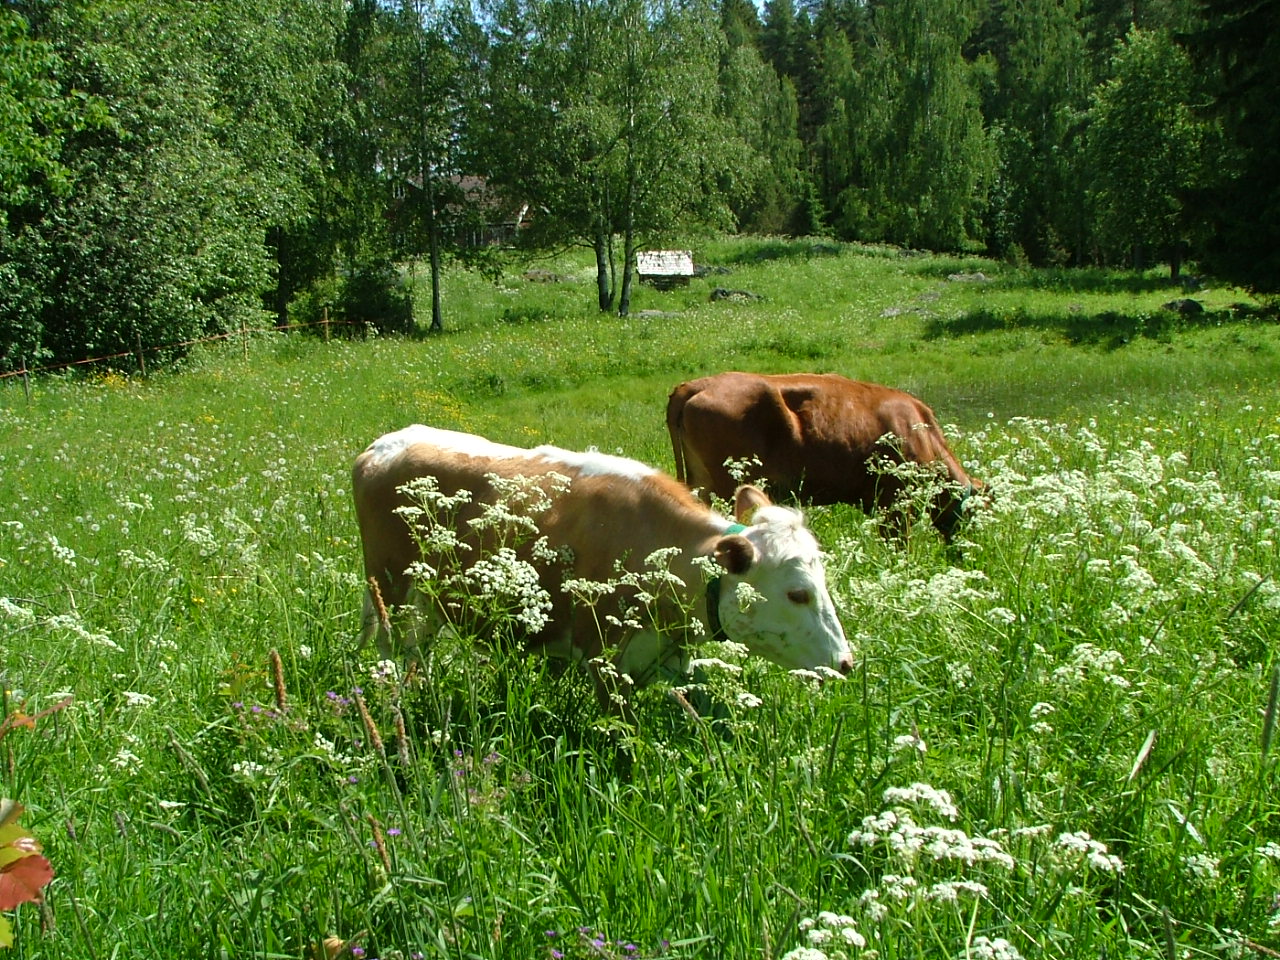 Kaksi lehmää vihreällä niityllä syö heinää. Toinen lehmä on ruskea, toinen valko-ruskea. Taustalla vihrä metsä.